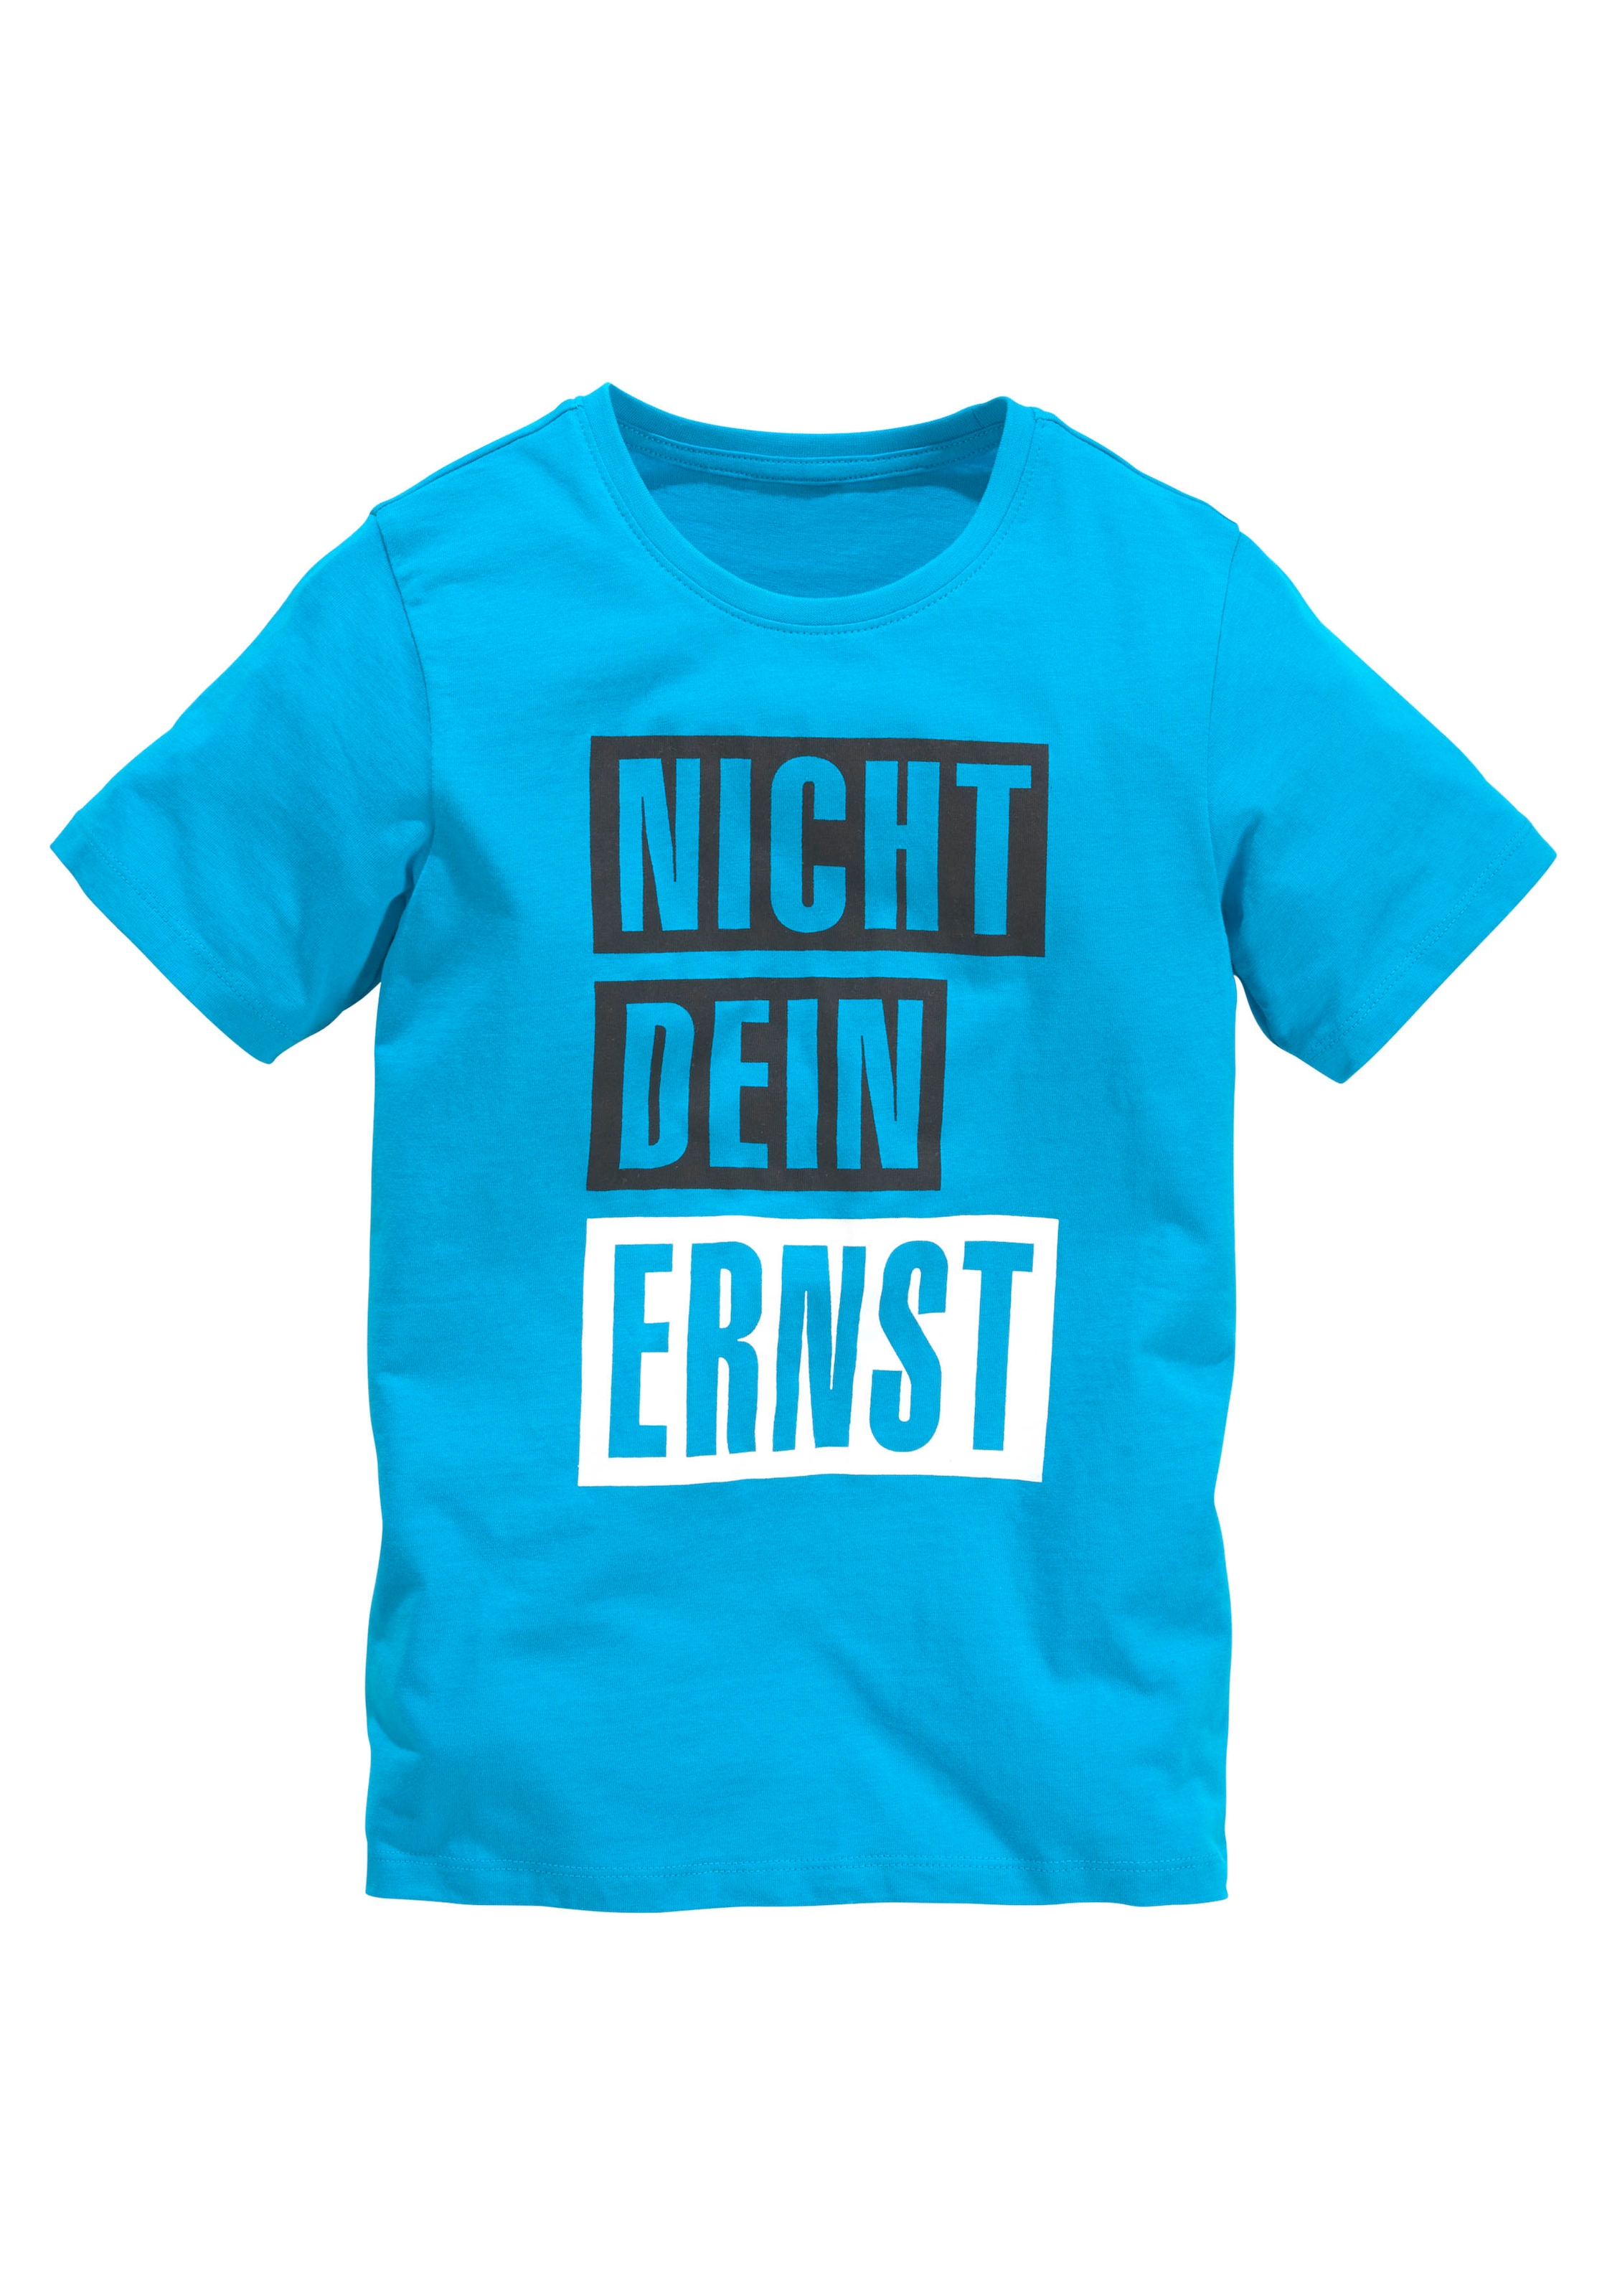 kaufen online | Österreich Statement-Shirts OTTO